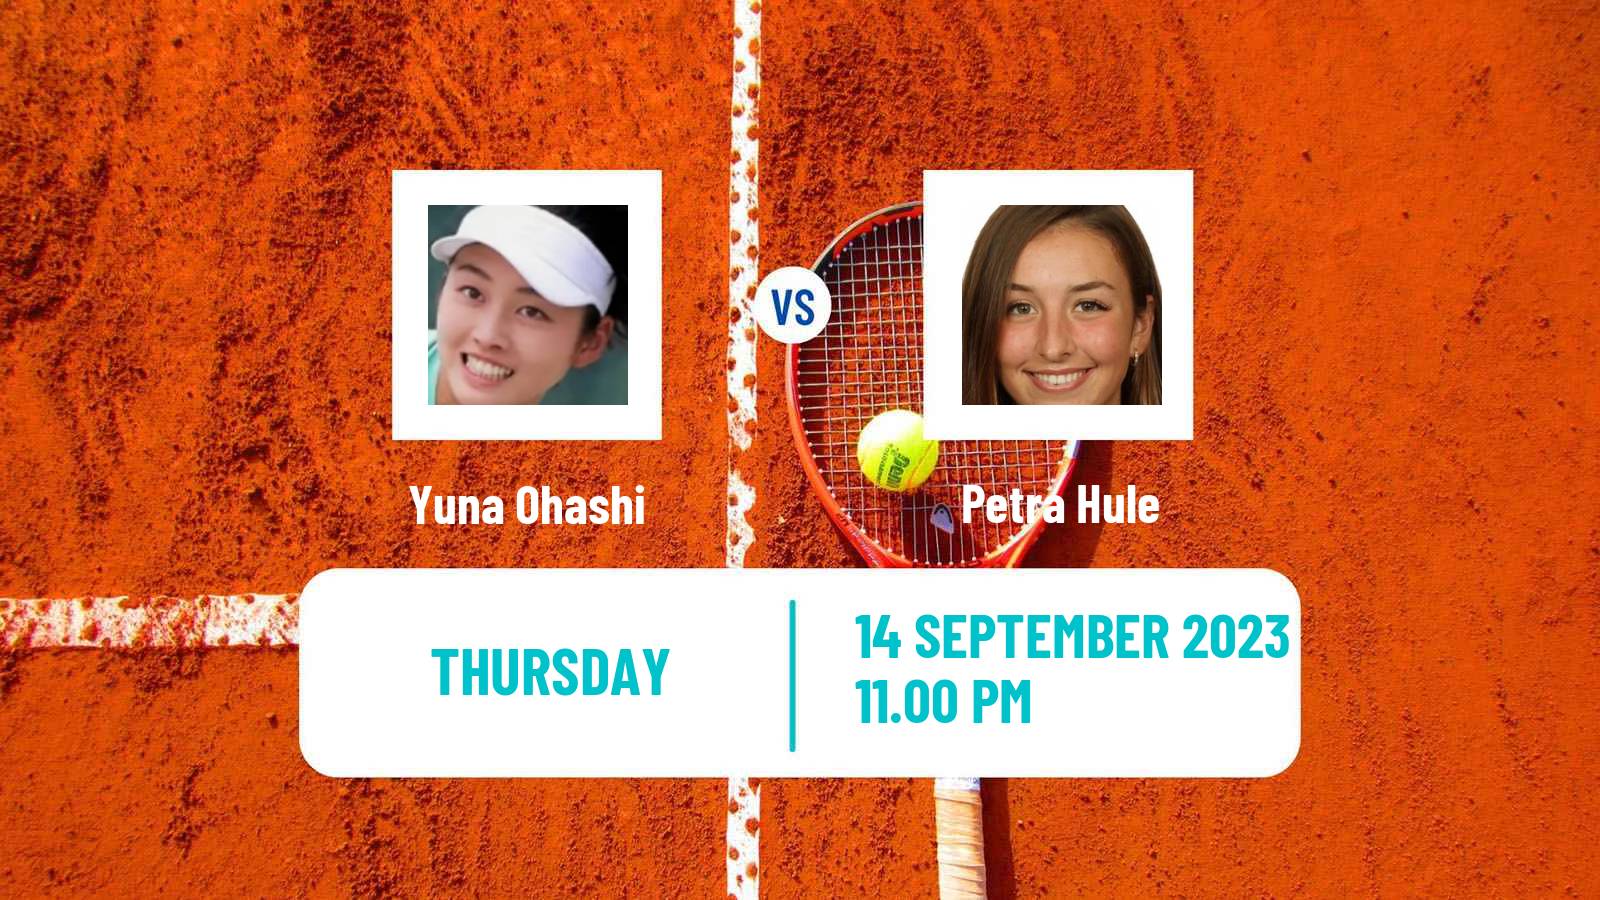 Tennis ITF W25 Perth Women Yuna Ohashi - Petra Hule